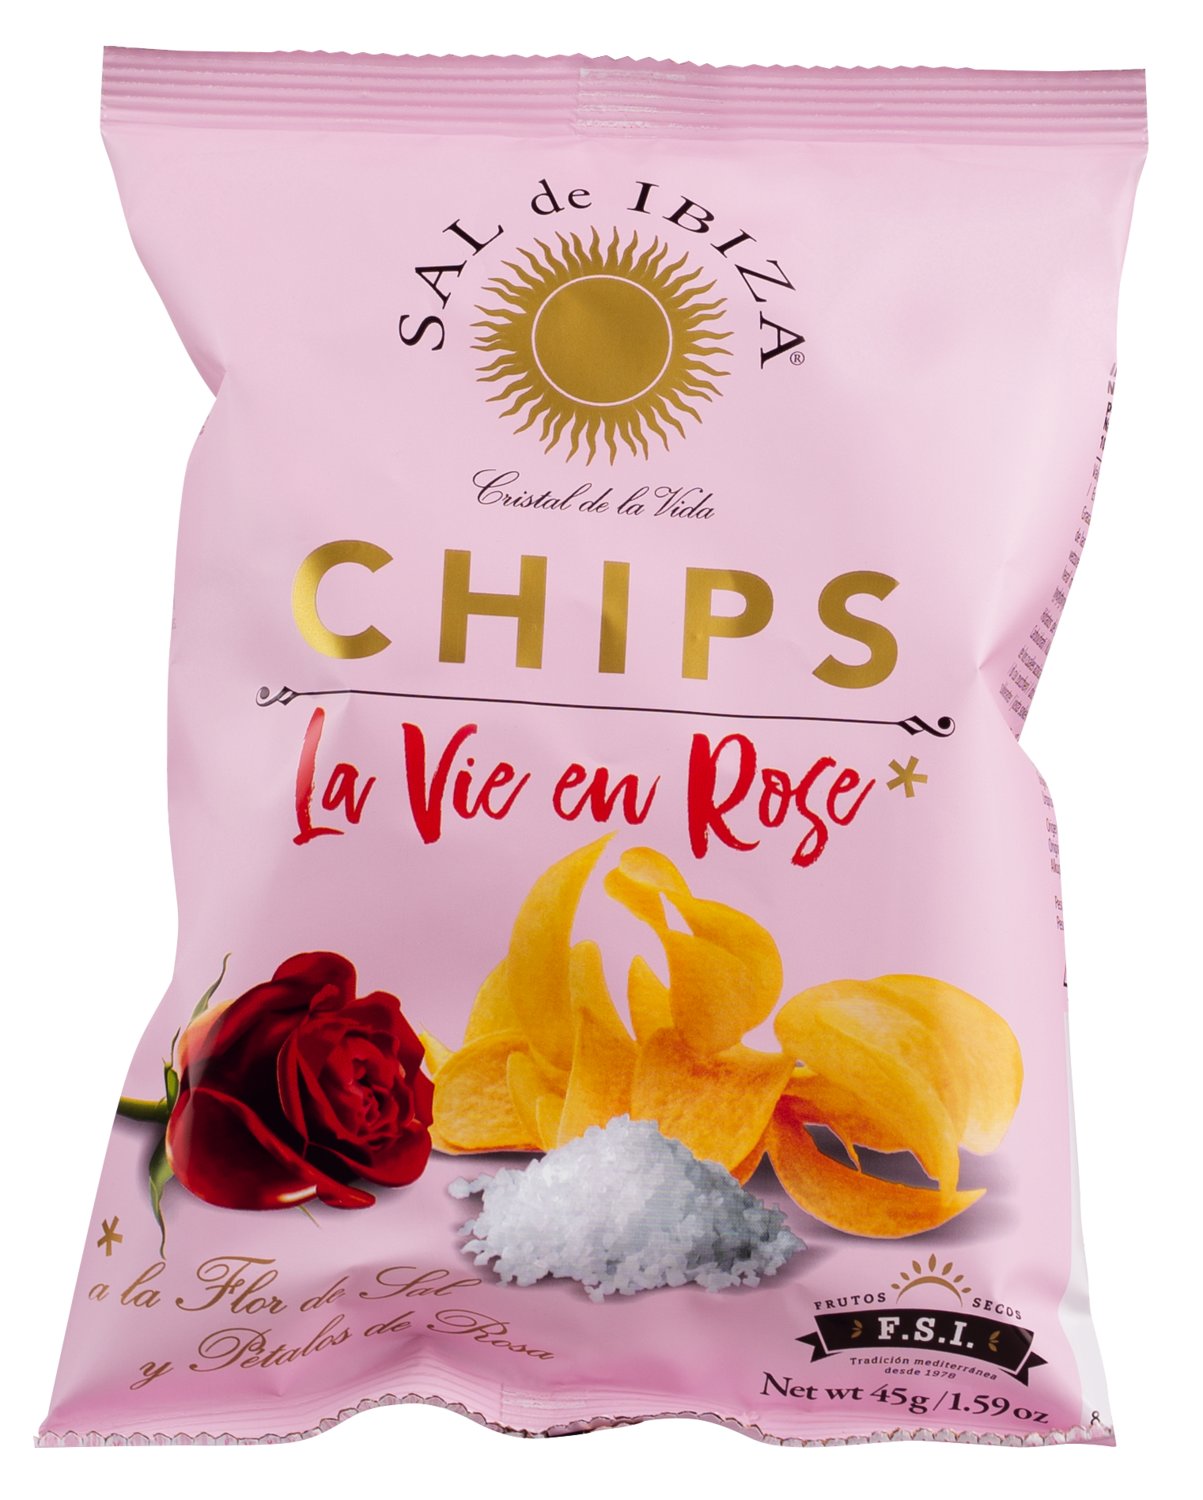 Sal de Ibiza Chips La vie en rose